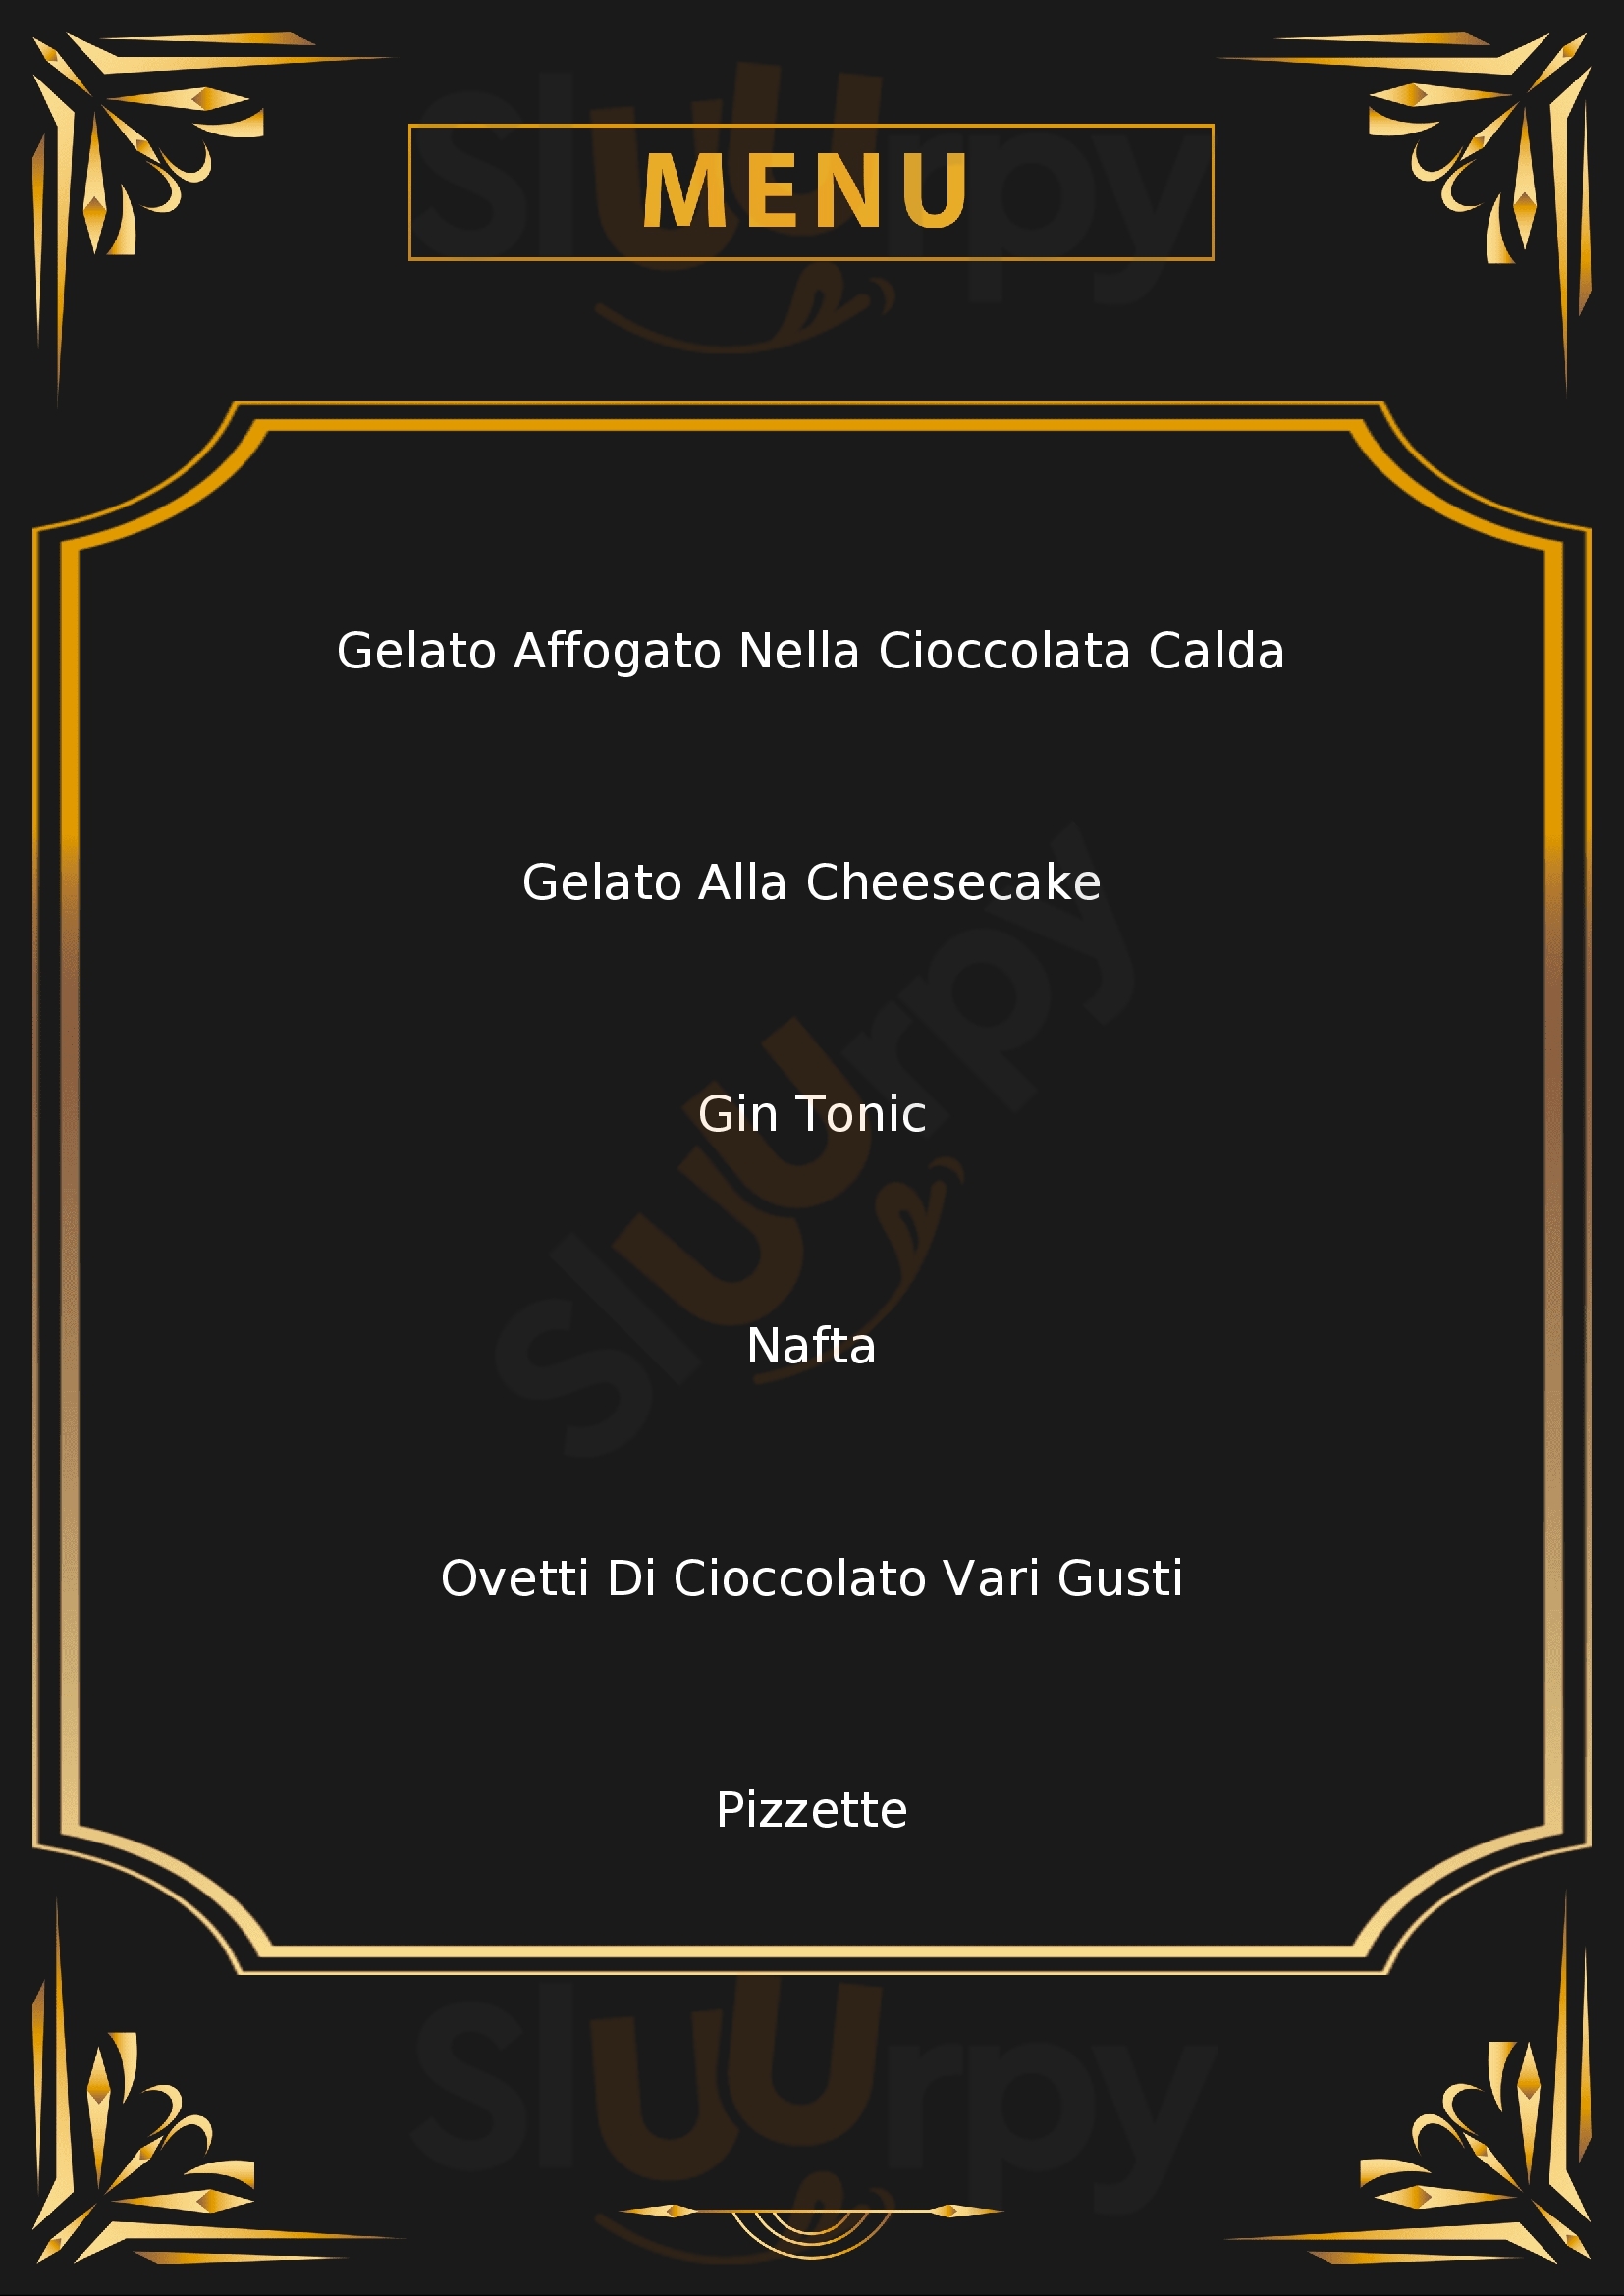 L'ANGOLO DELLA DOLCEZZA - Gelateria Artigianale, Cioccolateria San Quirino menù 1 pagina